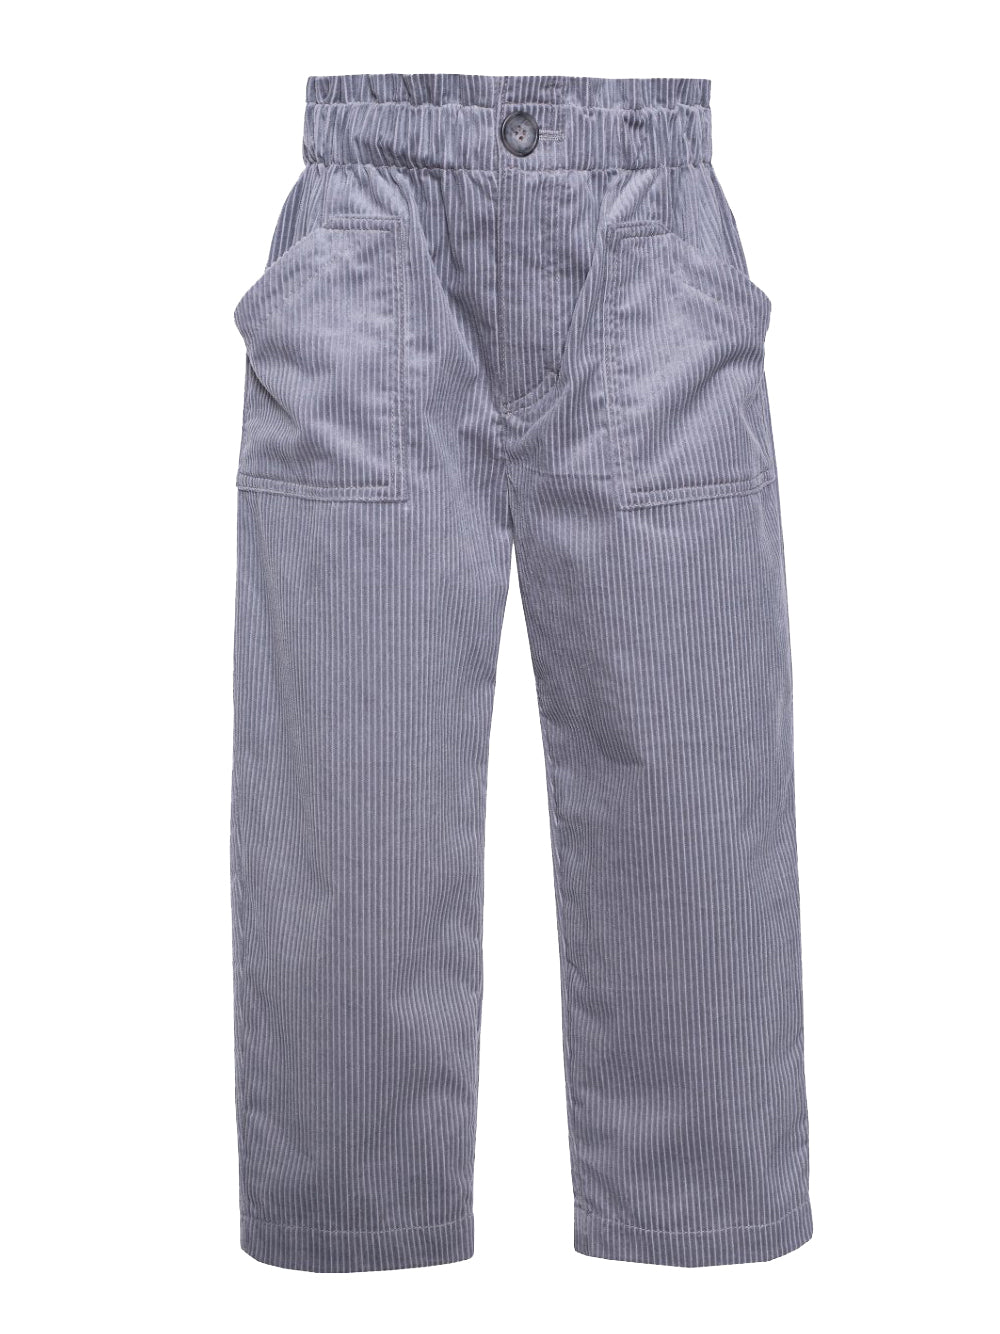 Curduroy Grey Pants